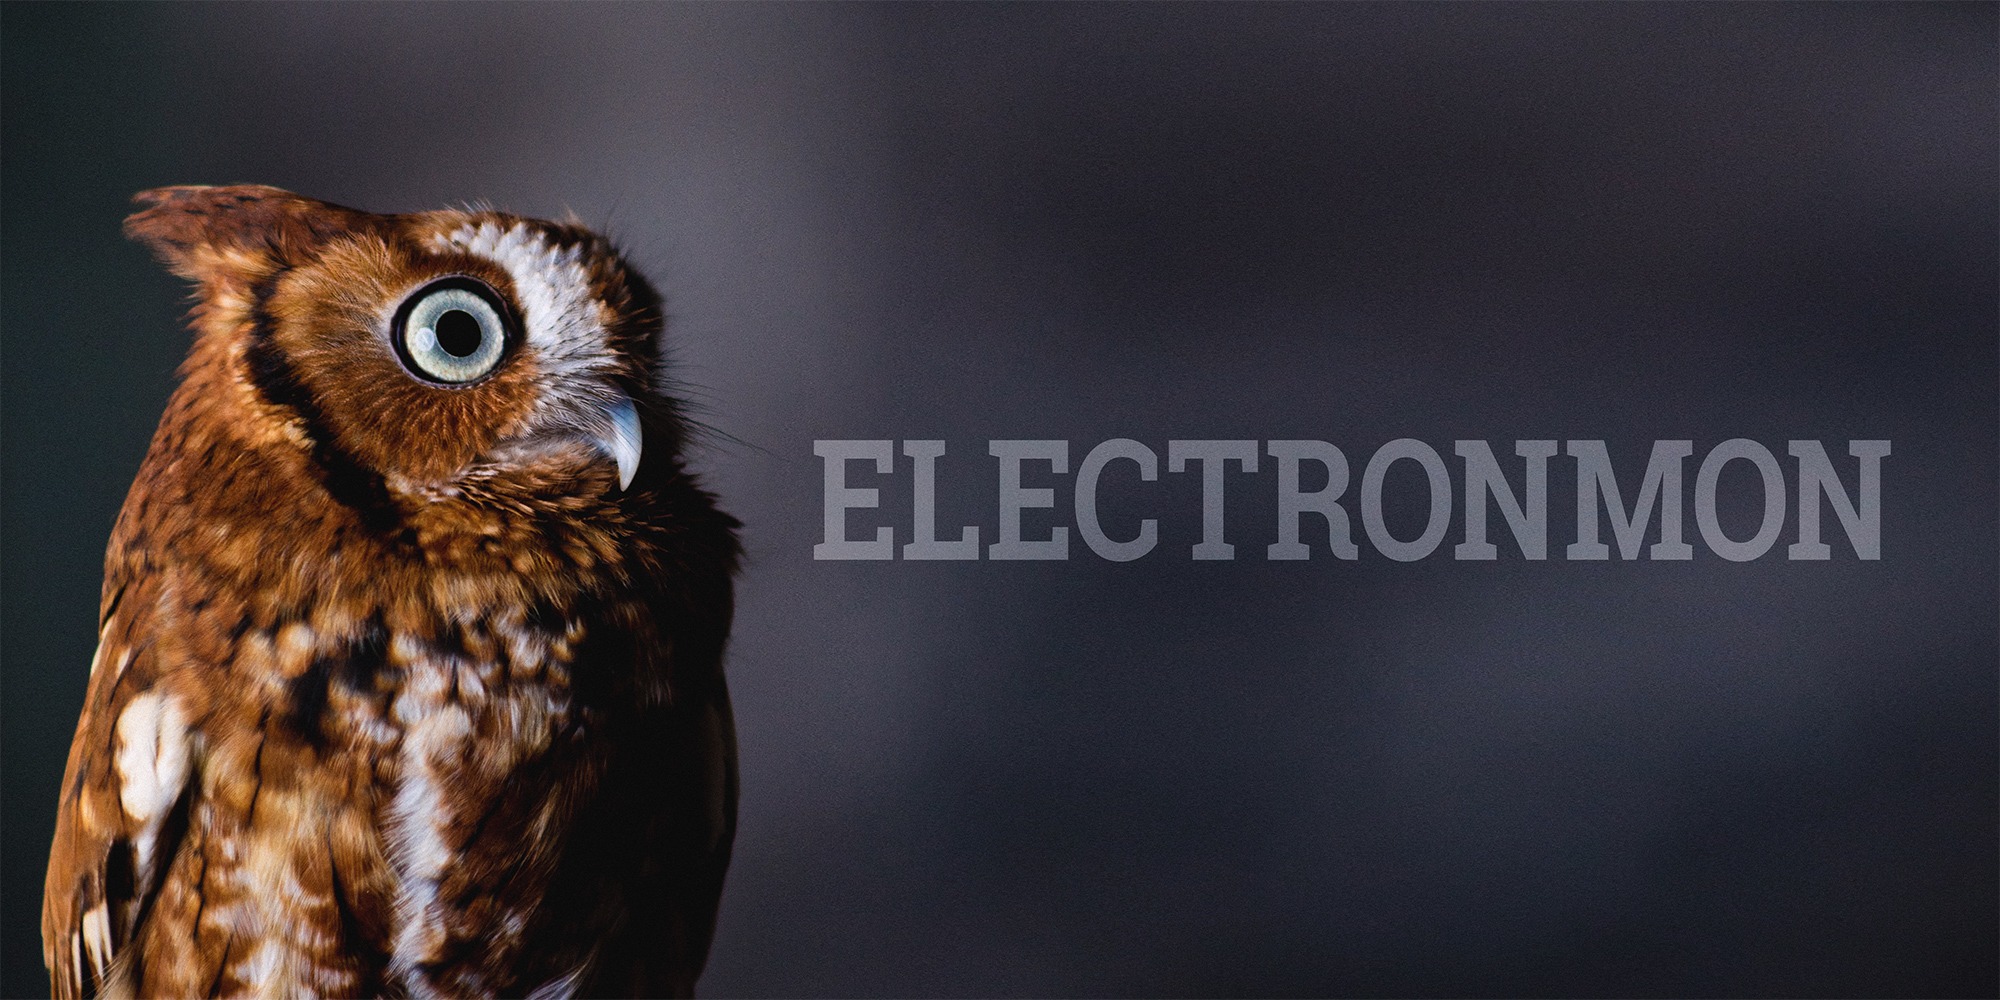 electronmon logo